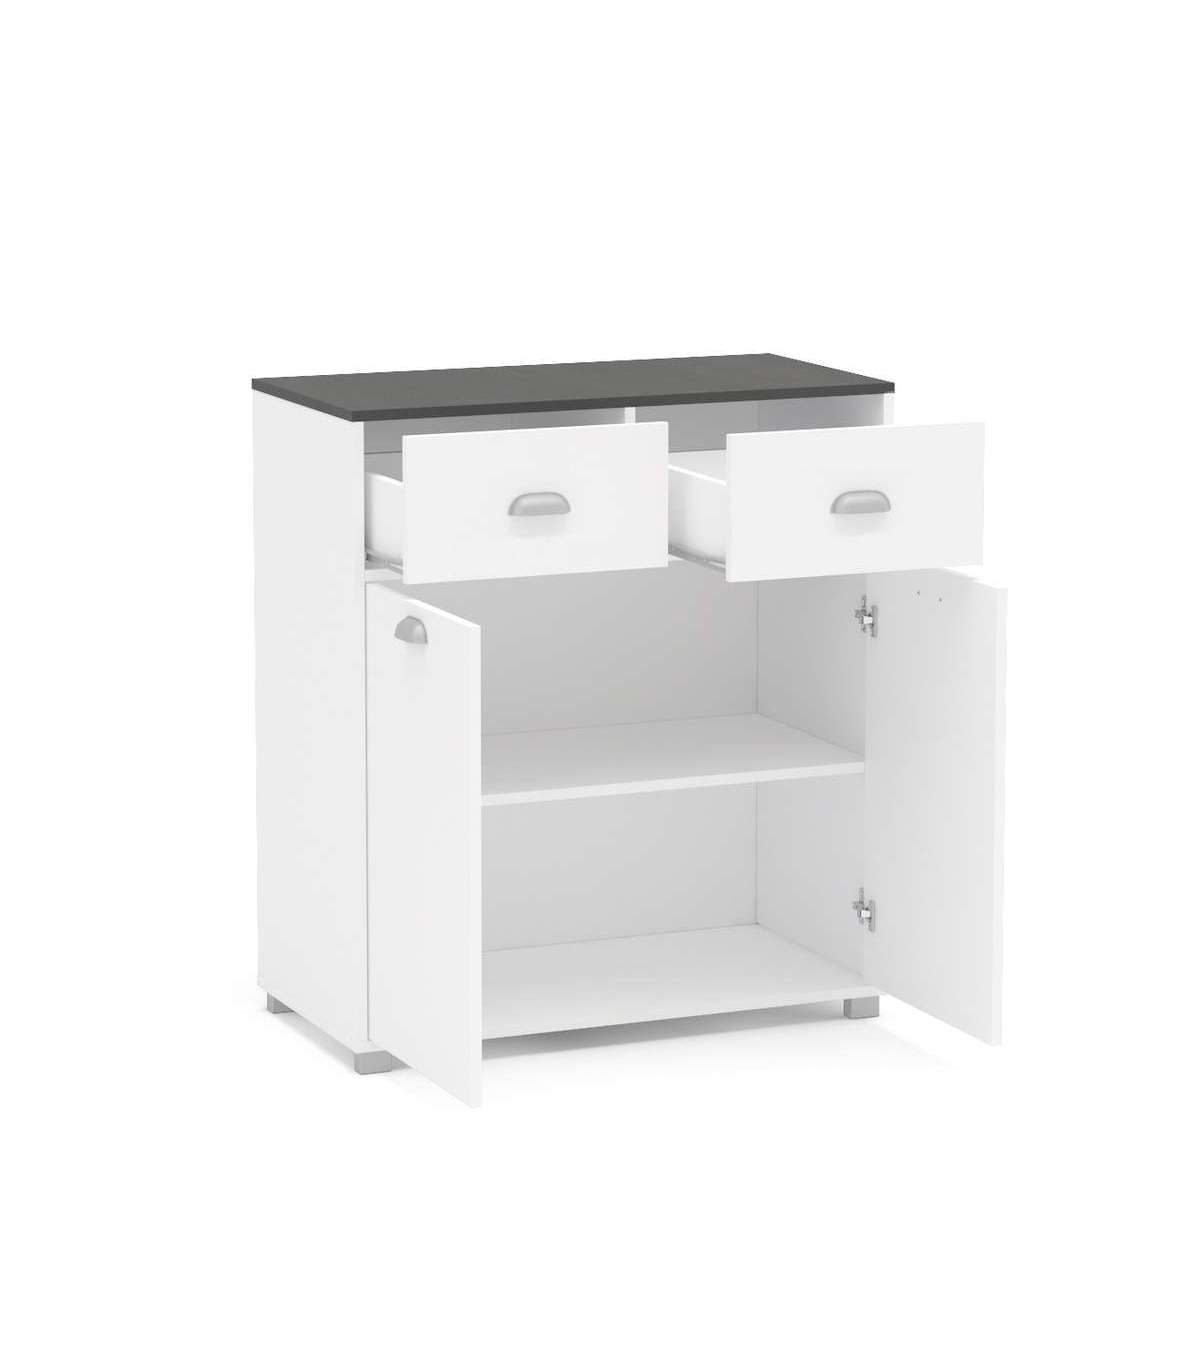 Mueble bajo BASIC blanco 1 puerta + 1 cajón fabricado en aglomerado 40 x 70  cm